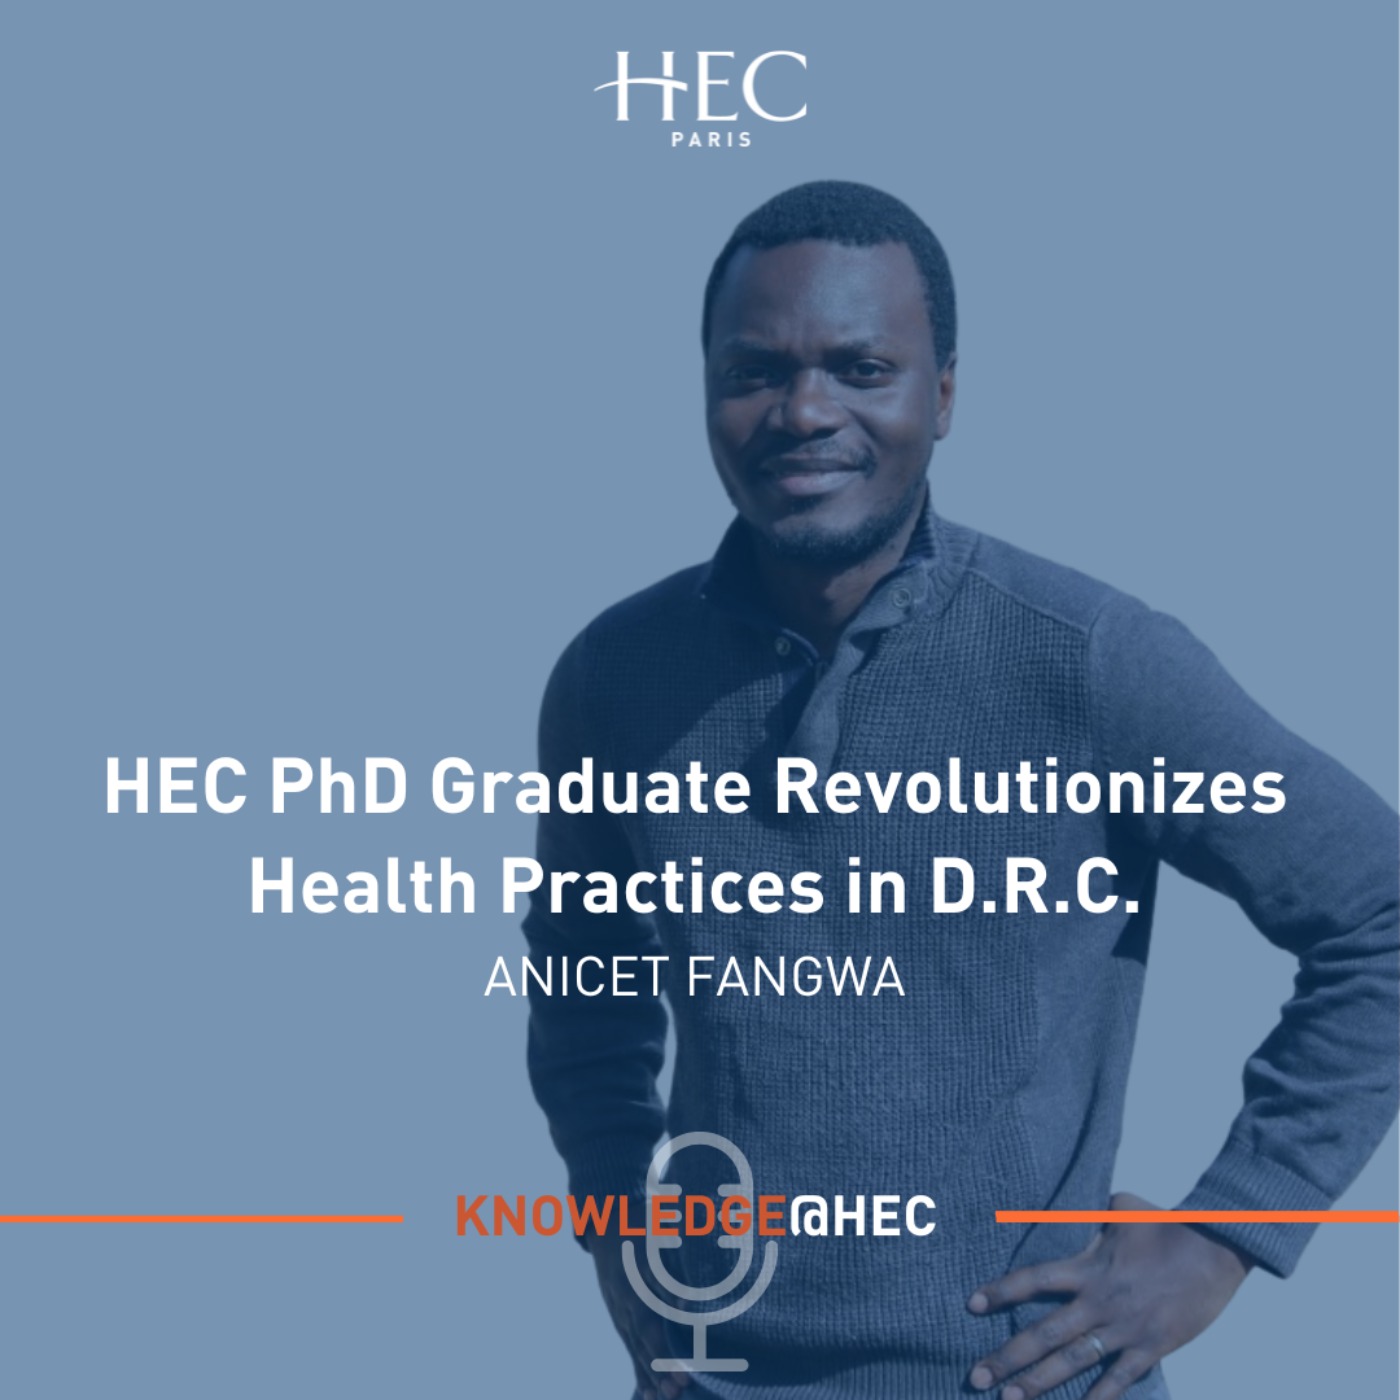 HEC PhD Graduate Revolutionizes Health Practices in D.R.C.